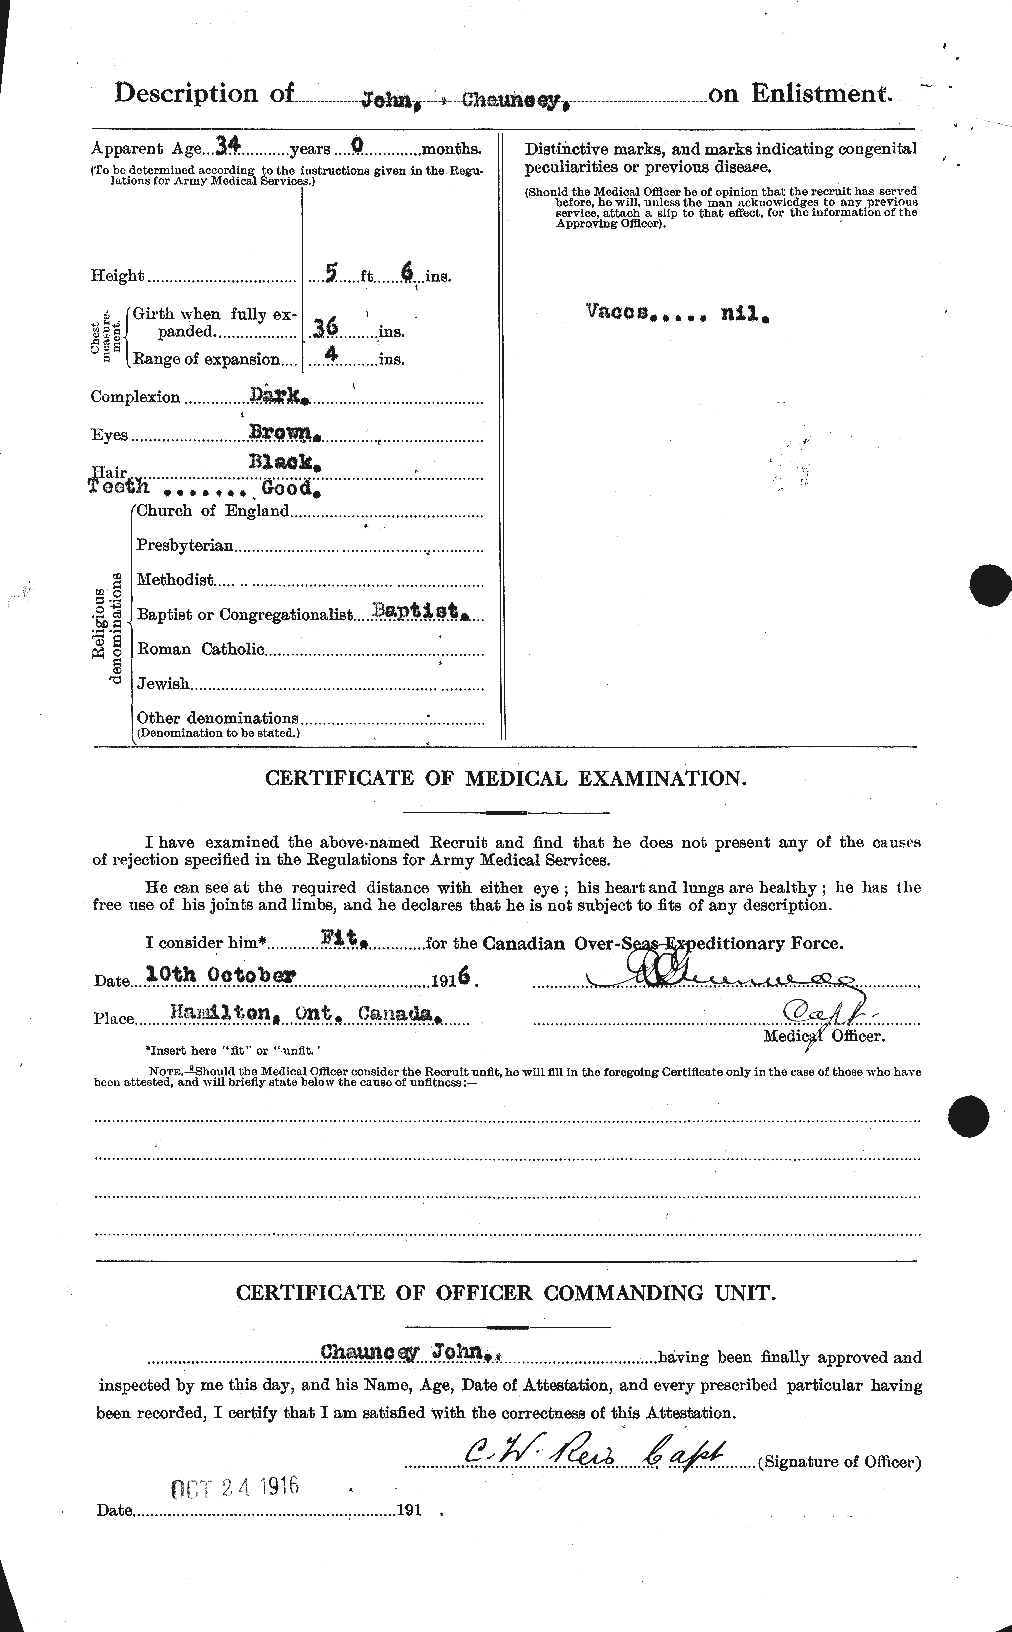 Dossiers du Personnel de la Première Guerre mondiale - CEC 420217b